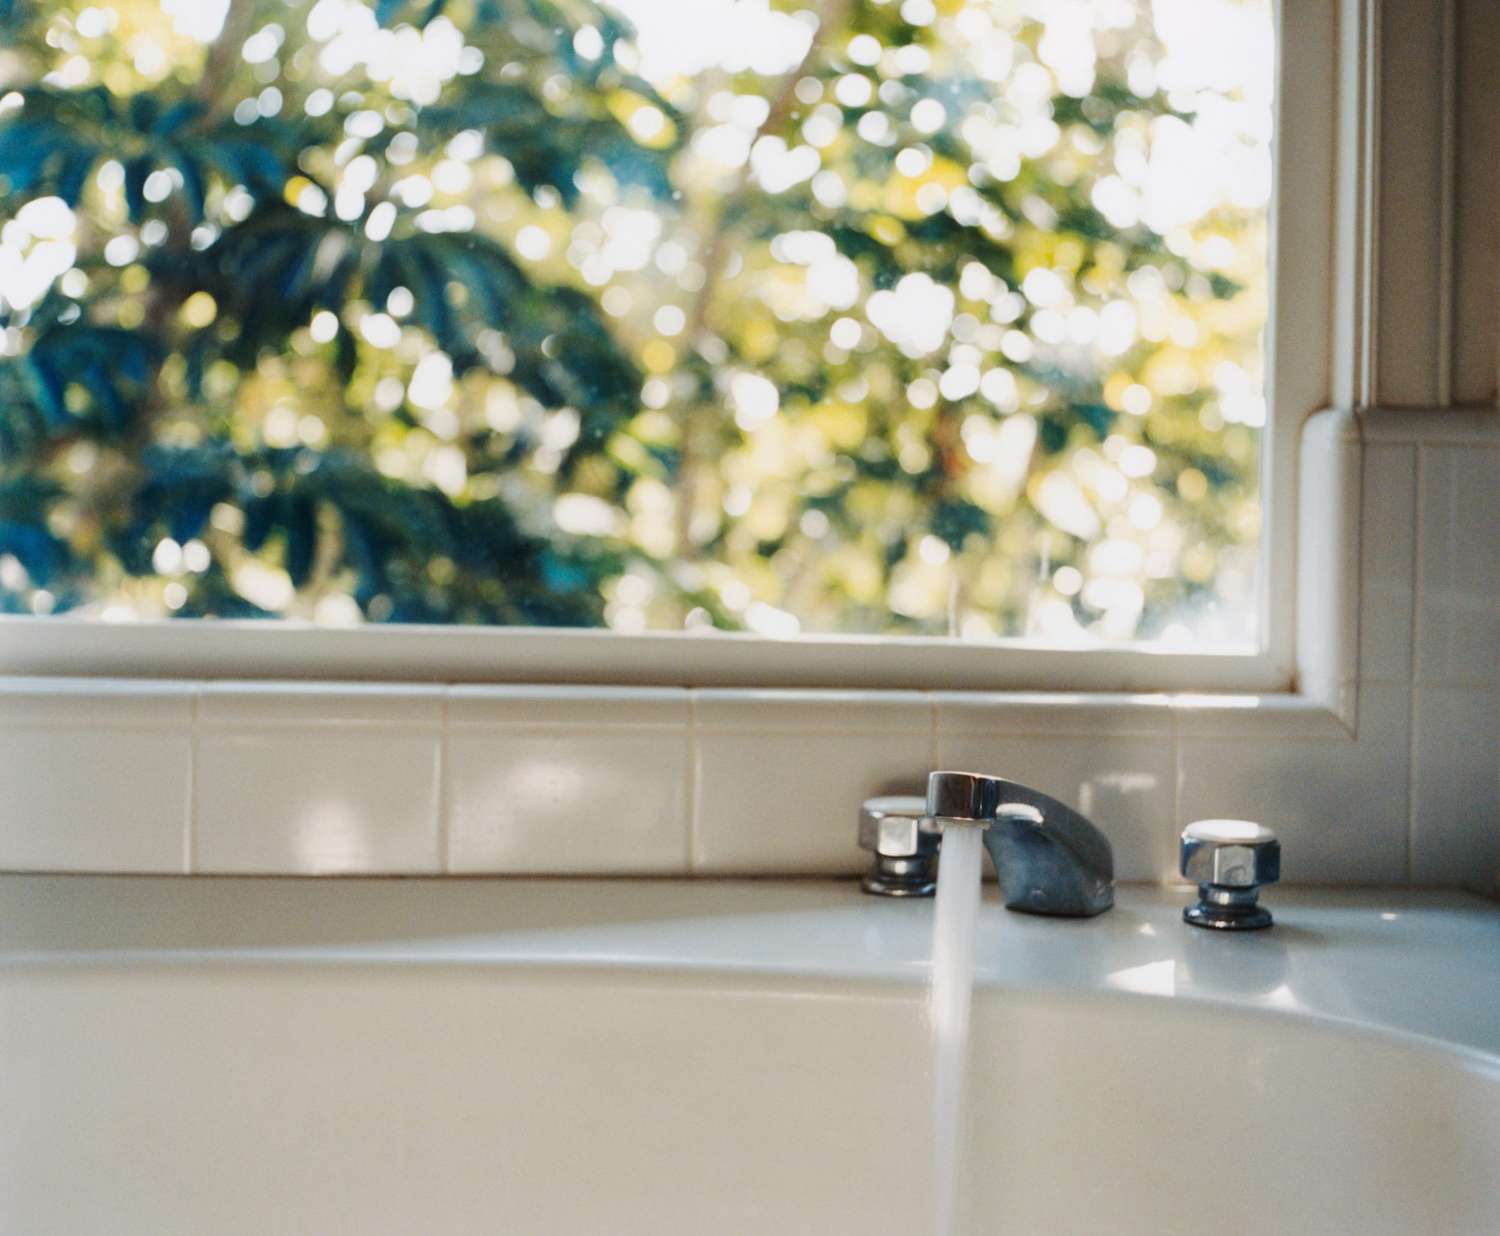 An image of a bathtub.